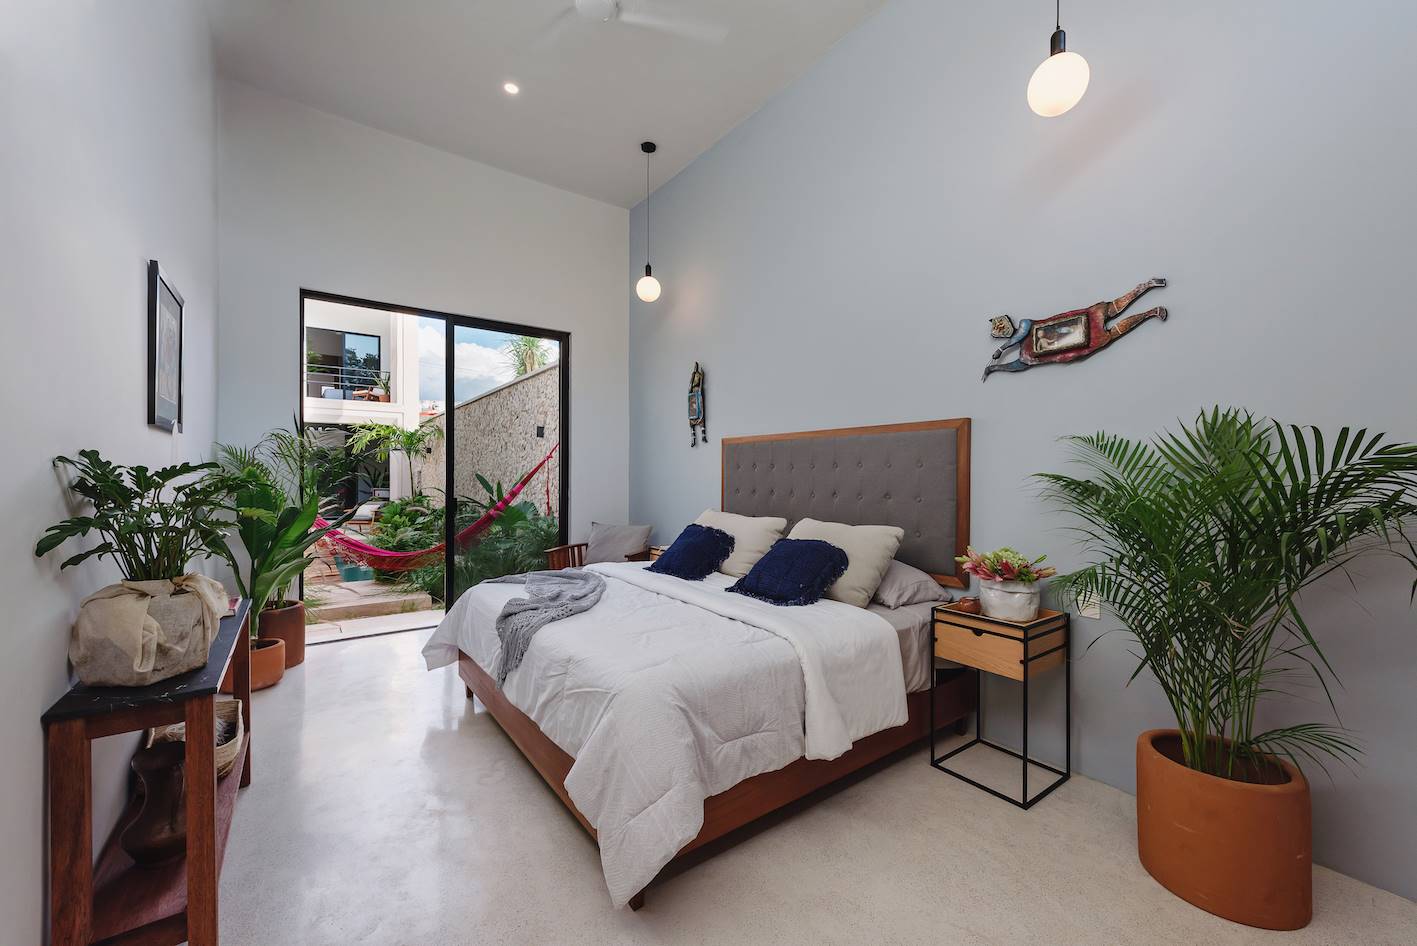 Dormitorio con cabecero de cama de madera y tapizado, plantas de interior y consola.